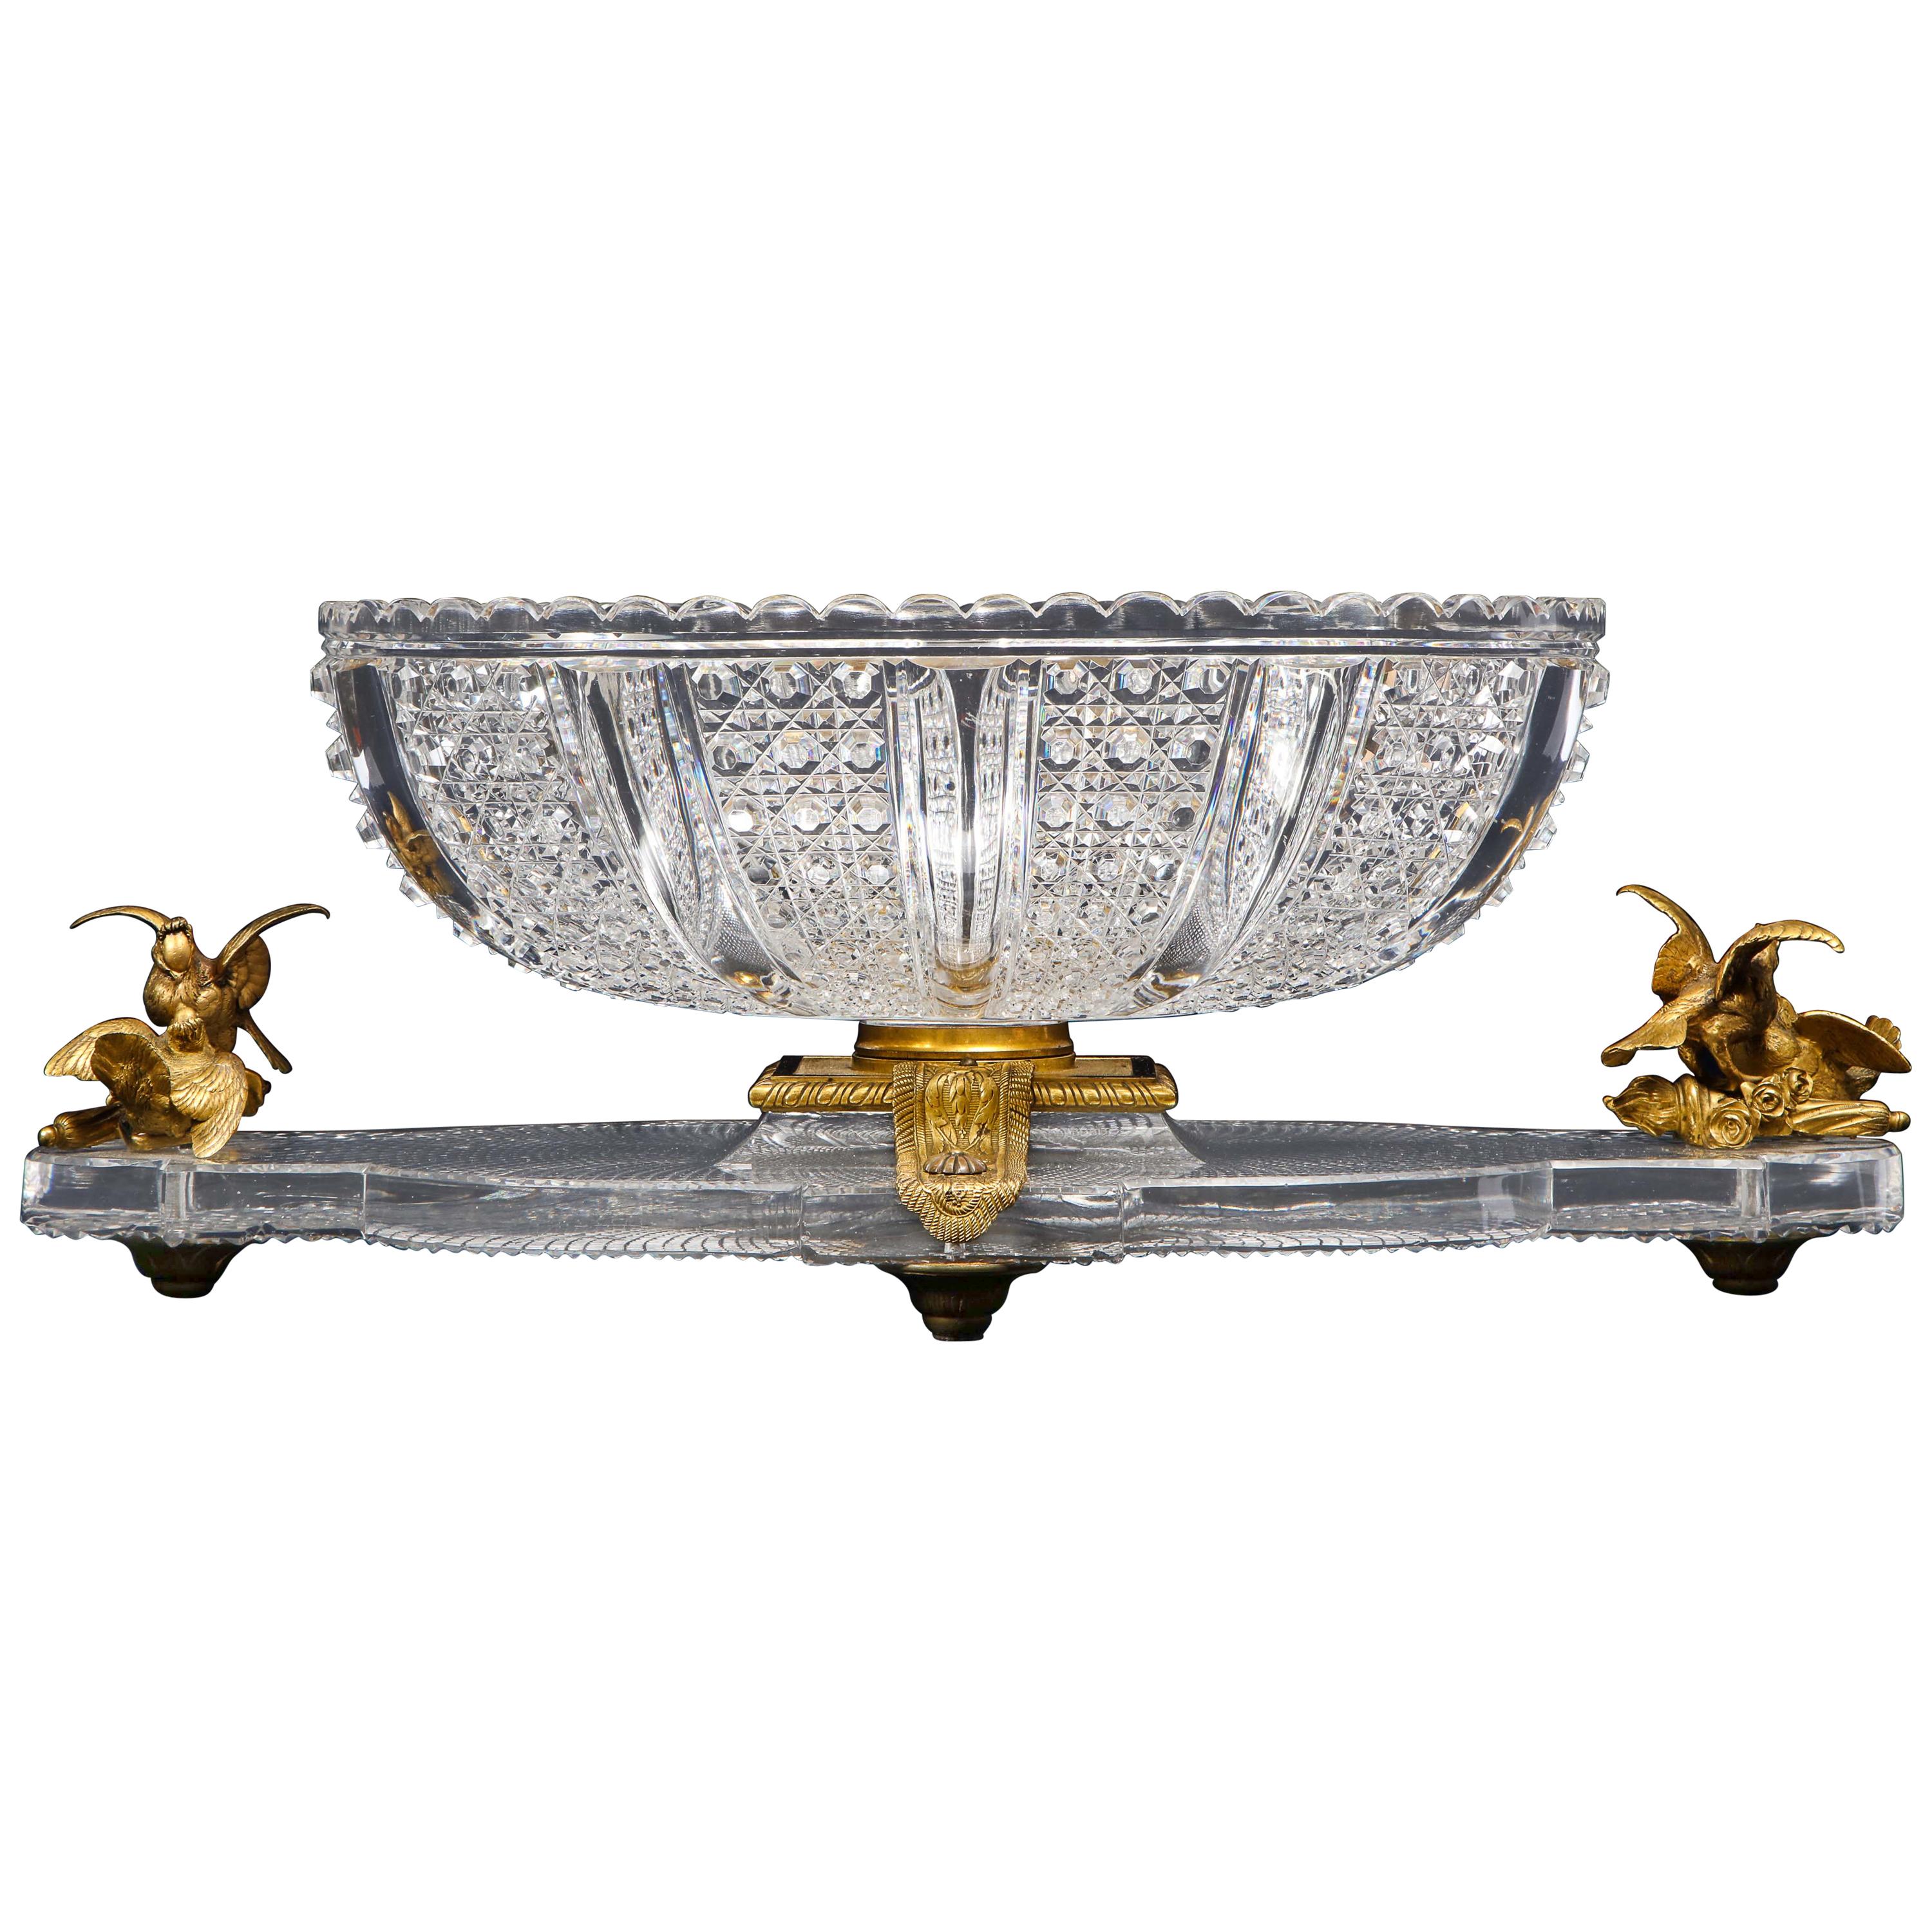 Hand-Diamond Cut Crystal & Ormolu Mounted Baccarat Centerpiece/Surtout de Table